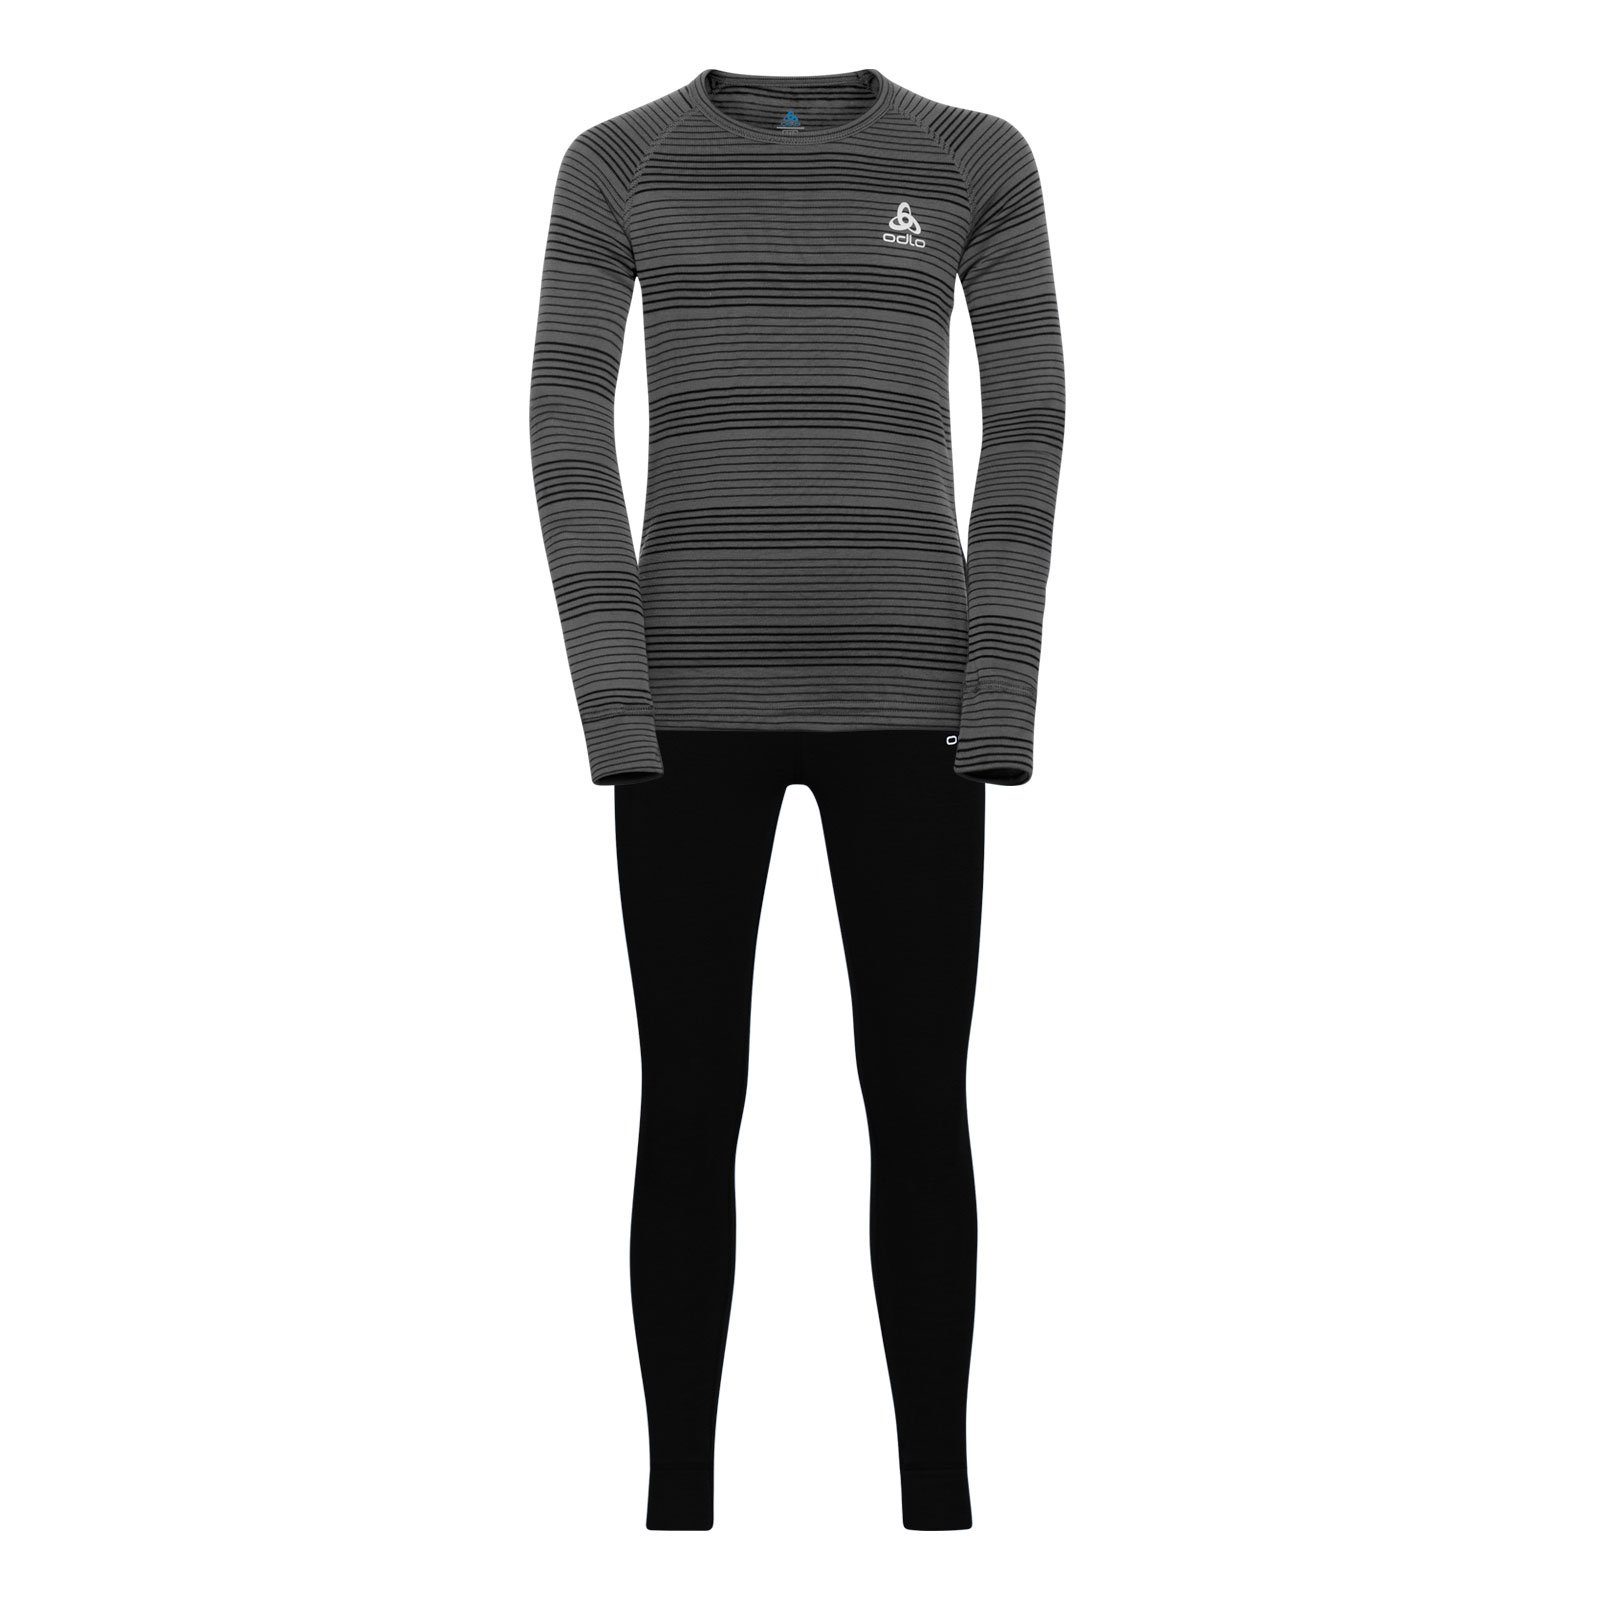 Odlo Thermounterhemd Active Sports Underwear Warm mit flauschig weicher Innenseite 15701 grey melange / black